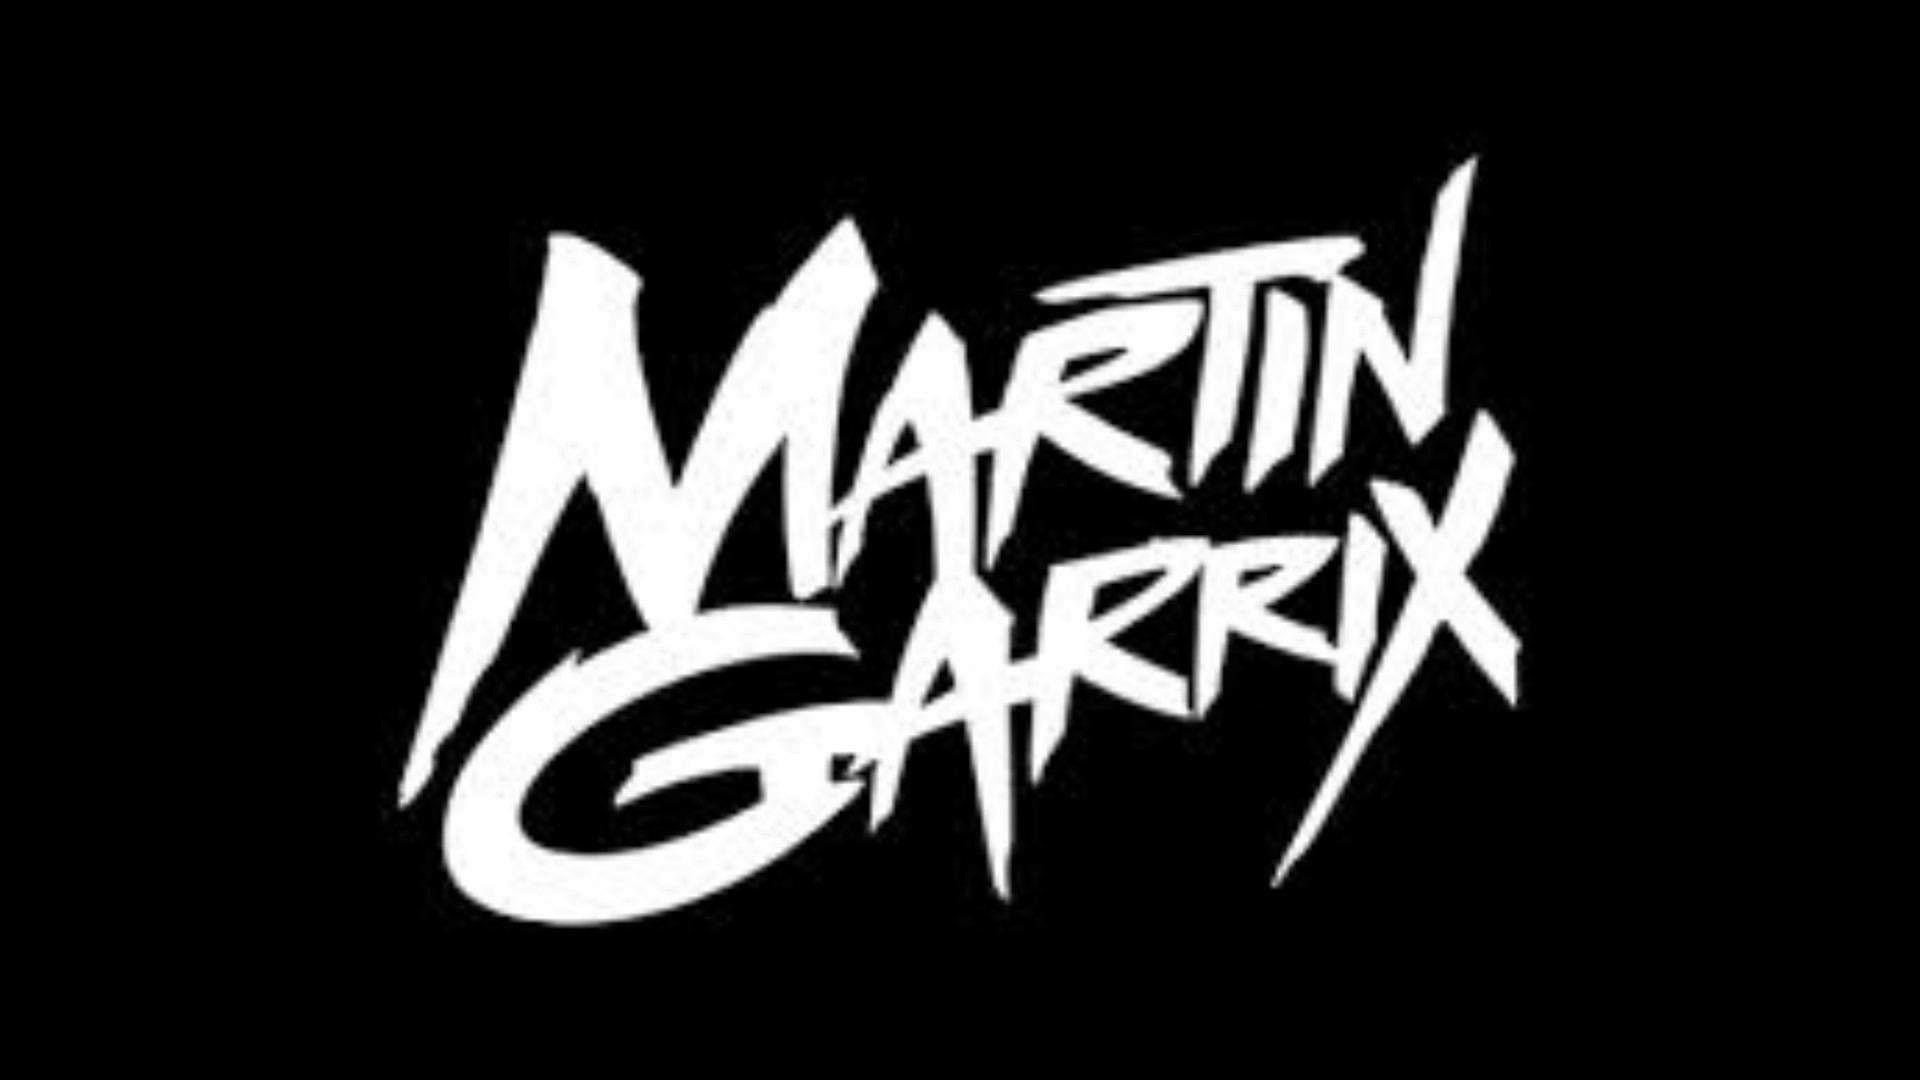 Martin Garrix Wallpapers